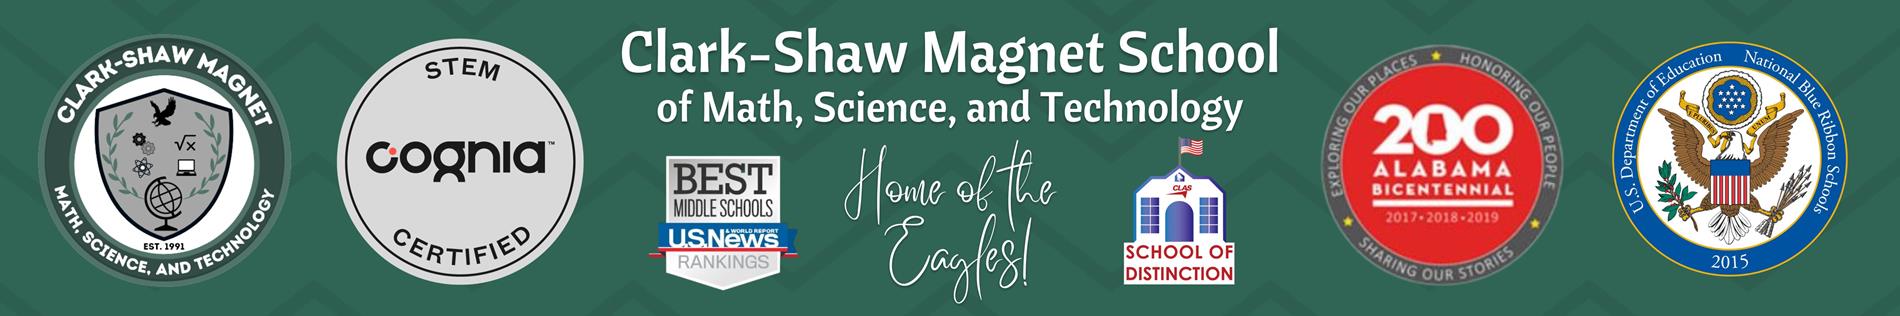 Website banner Clark-Shaw Magnet School